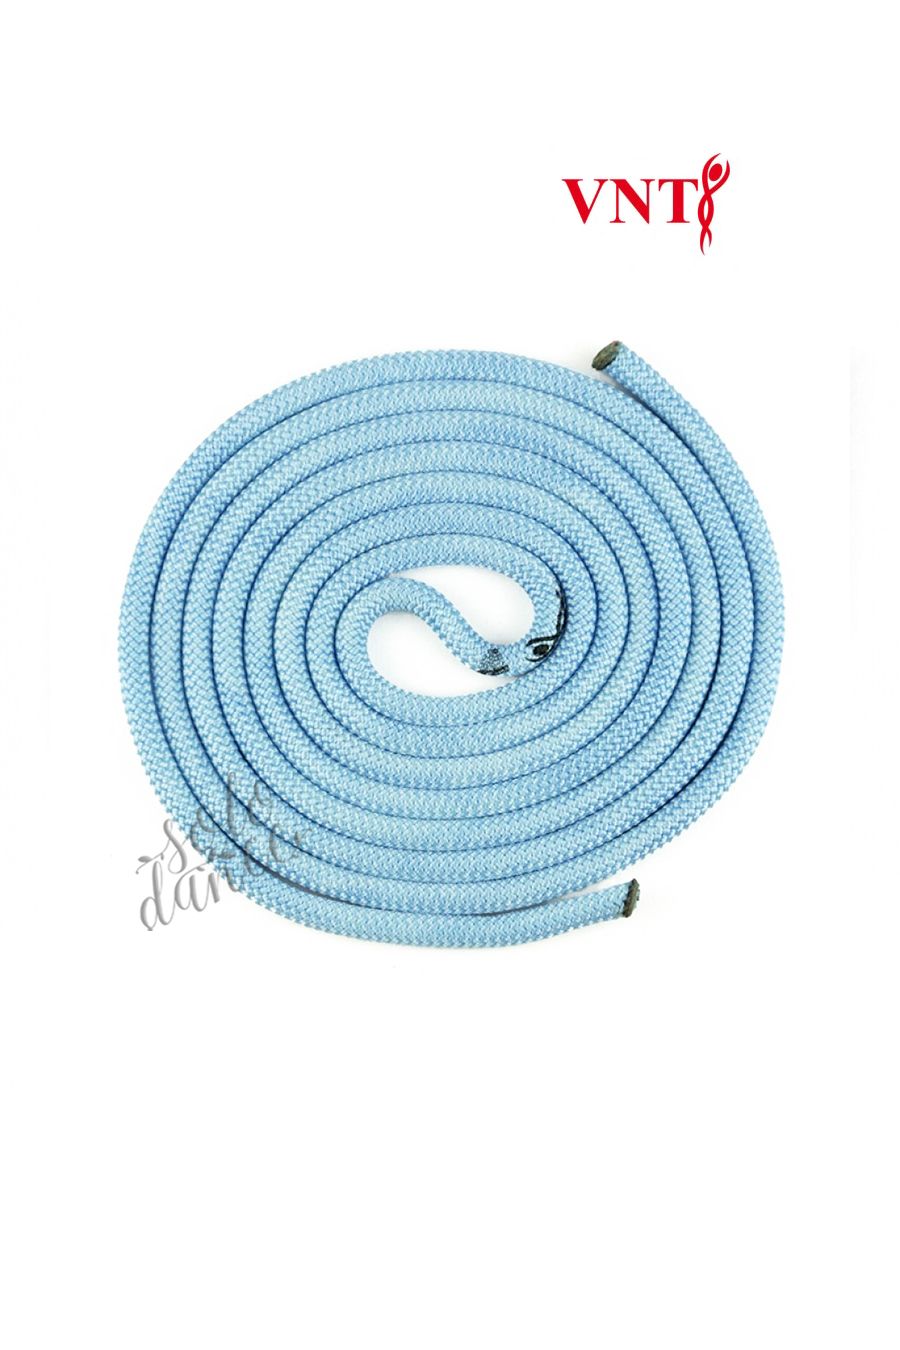 Rope Venturelli for rythmic gymnastic ROP-PL2 Sky Blue